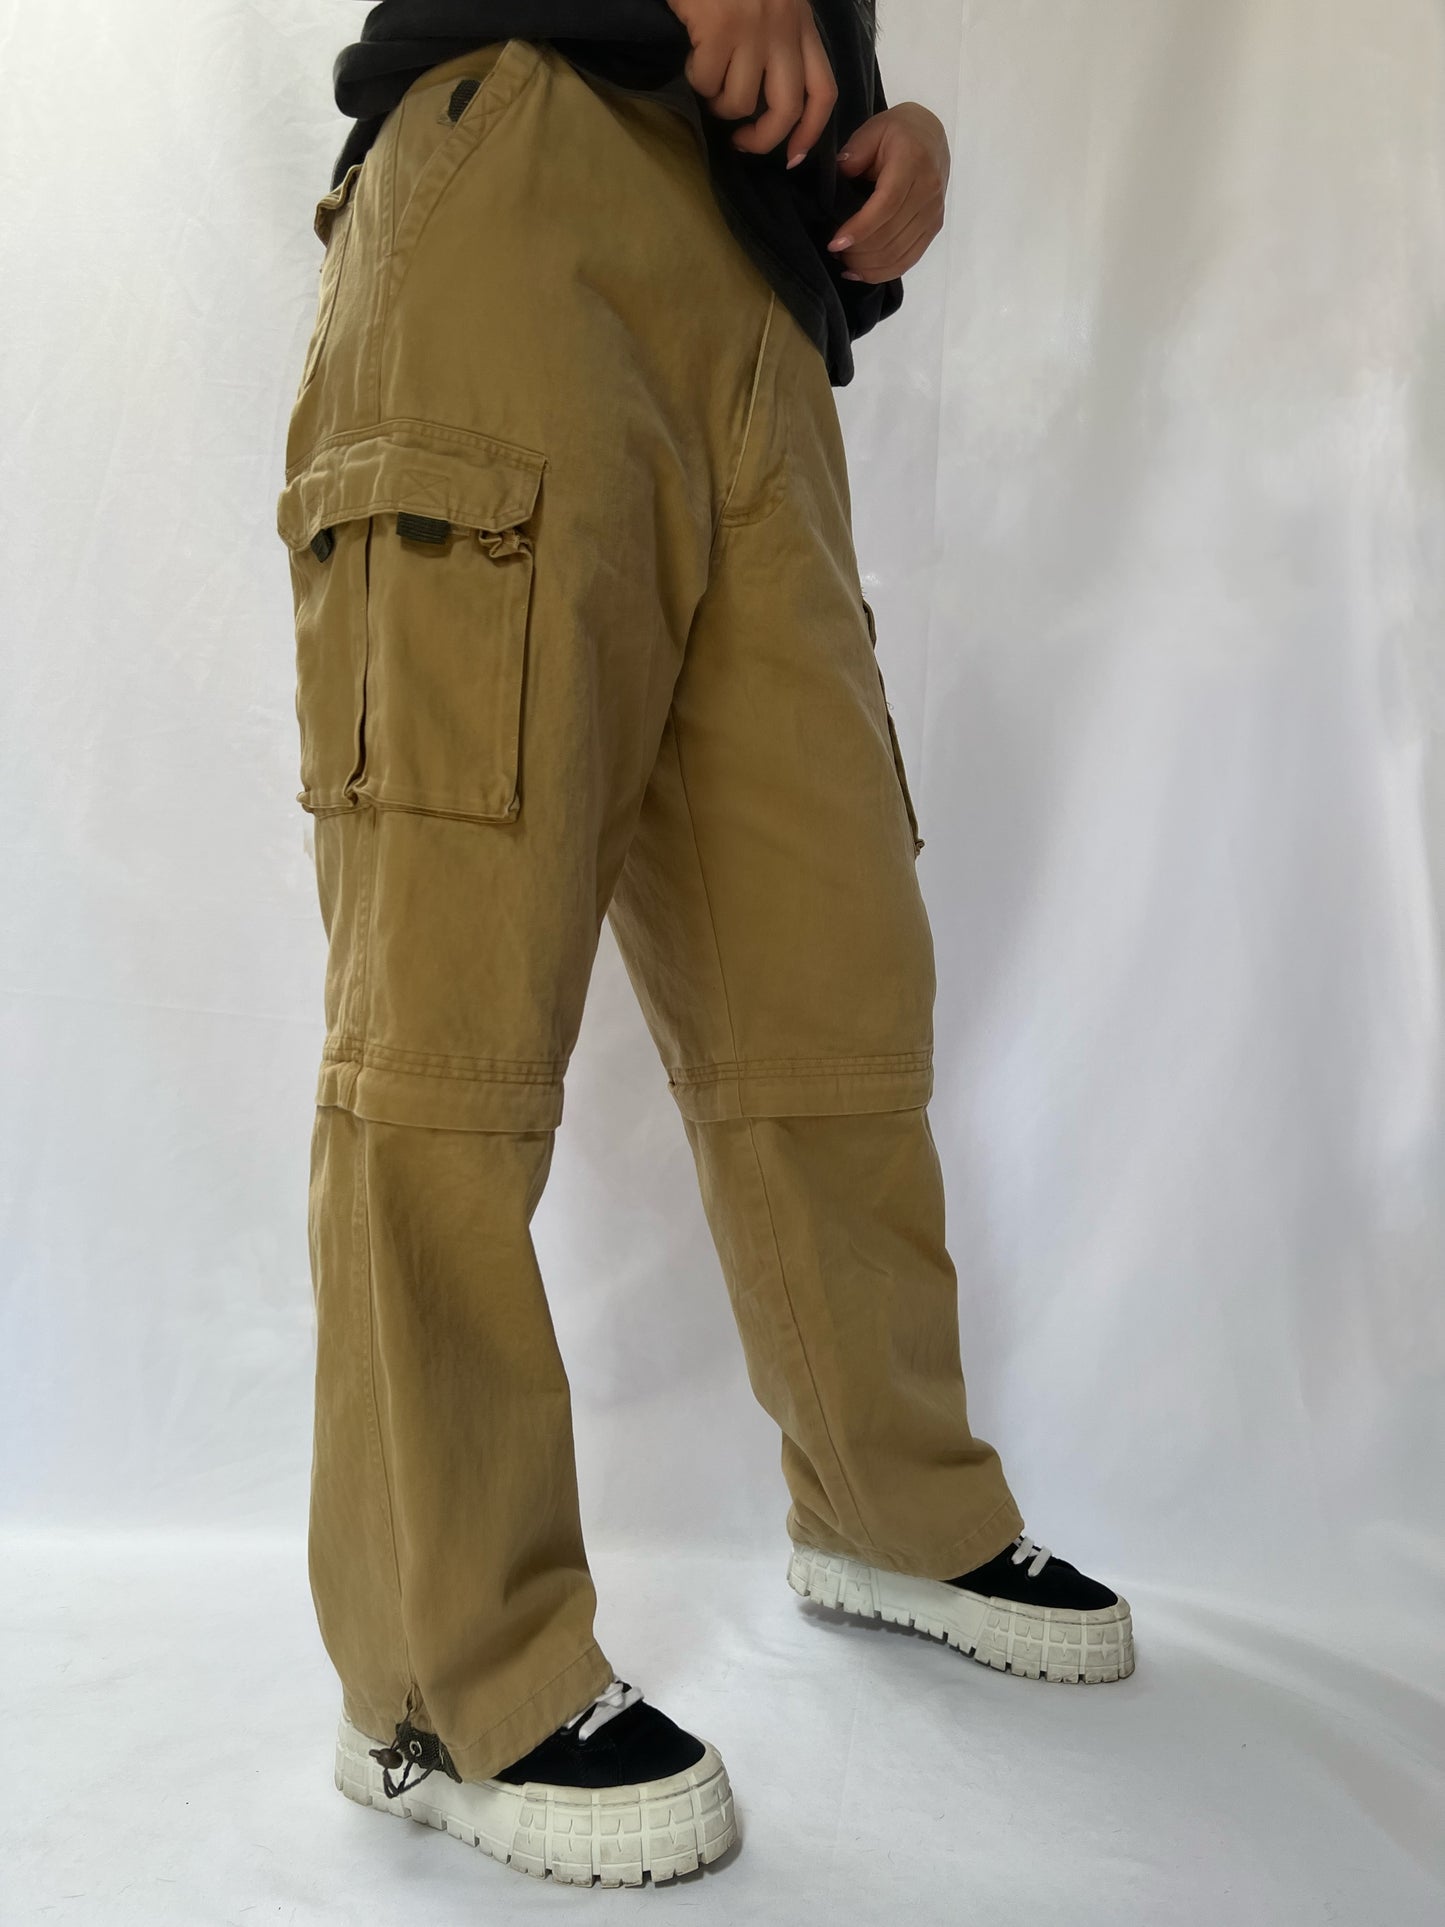 Khaki Cargo Pants - 32"